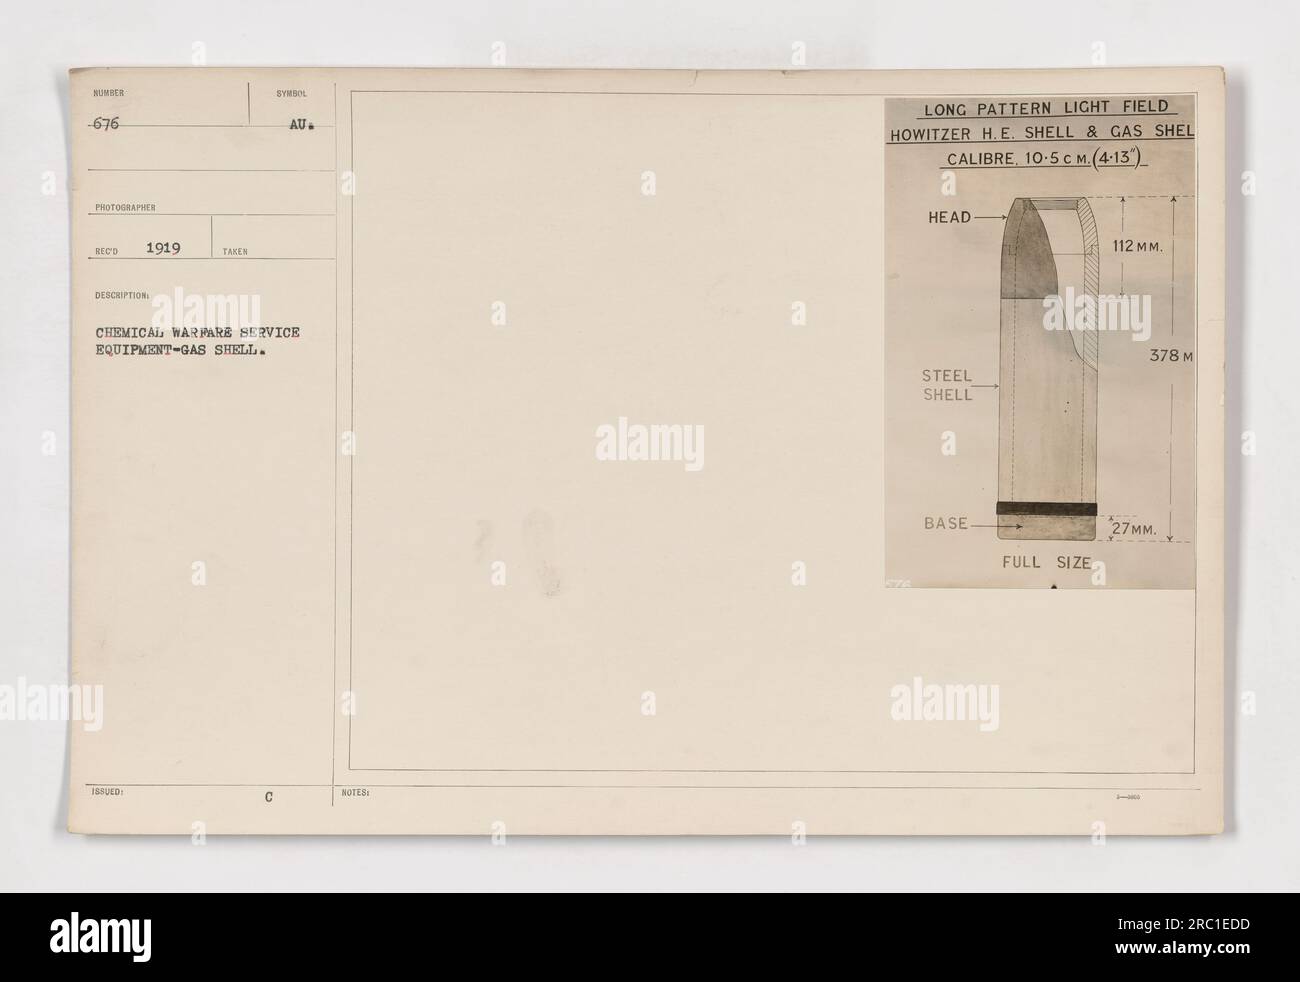 Un'immagine che mostra il guscio del gas SUMBE utilizzato dal Chemical Warfare Service durante la prima guerra mondiale La fotografia, scattata nel 1919, cattura un simbolo dell'attrezzatura del servizio. Il guscio del gas è progettato per l'obice di campo luminoso con un calibro di 10,5 cm (4,13 pollici). La testa del guscio è realizzata in acciaio e ha una dimensione di base di 112 mm (4,37 pollici), una dimensione completa di 378 mm (14,88 pollici) e una lunghezza di 27 mm (1,06 pollici). Foto Stock